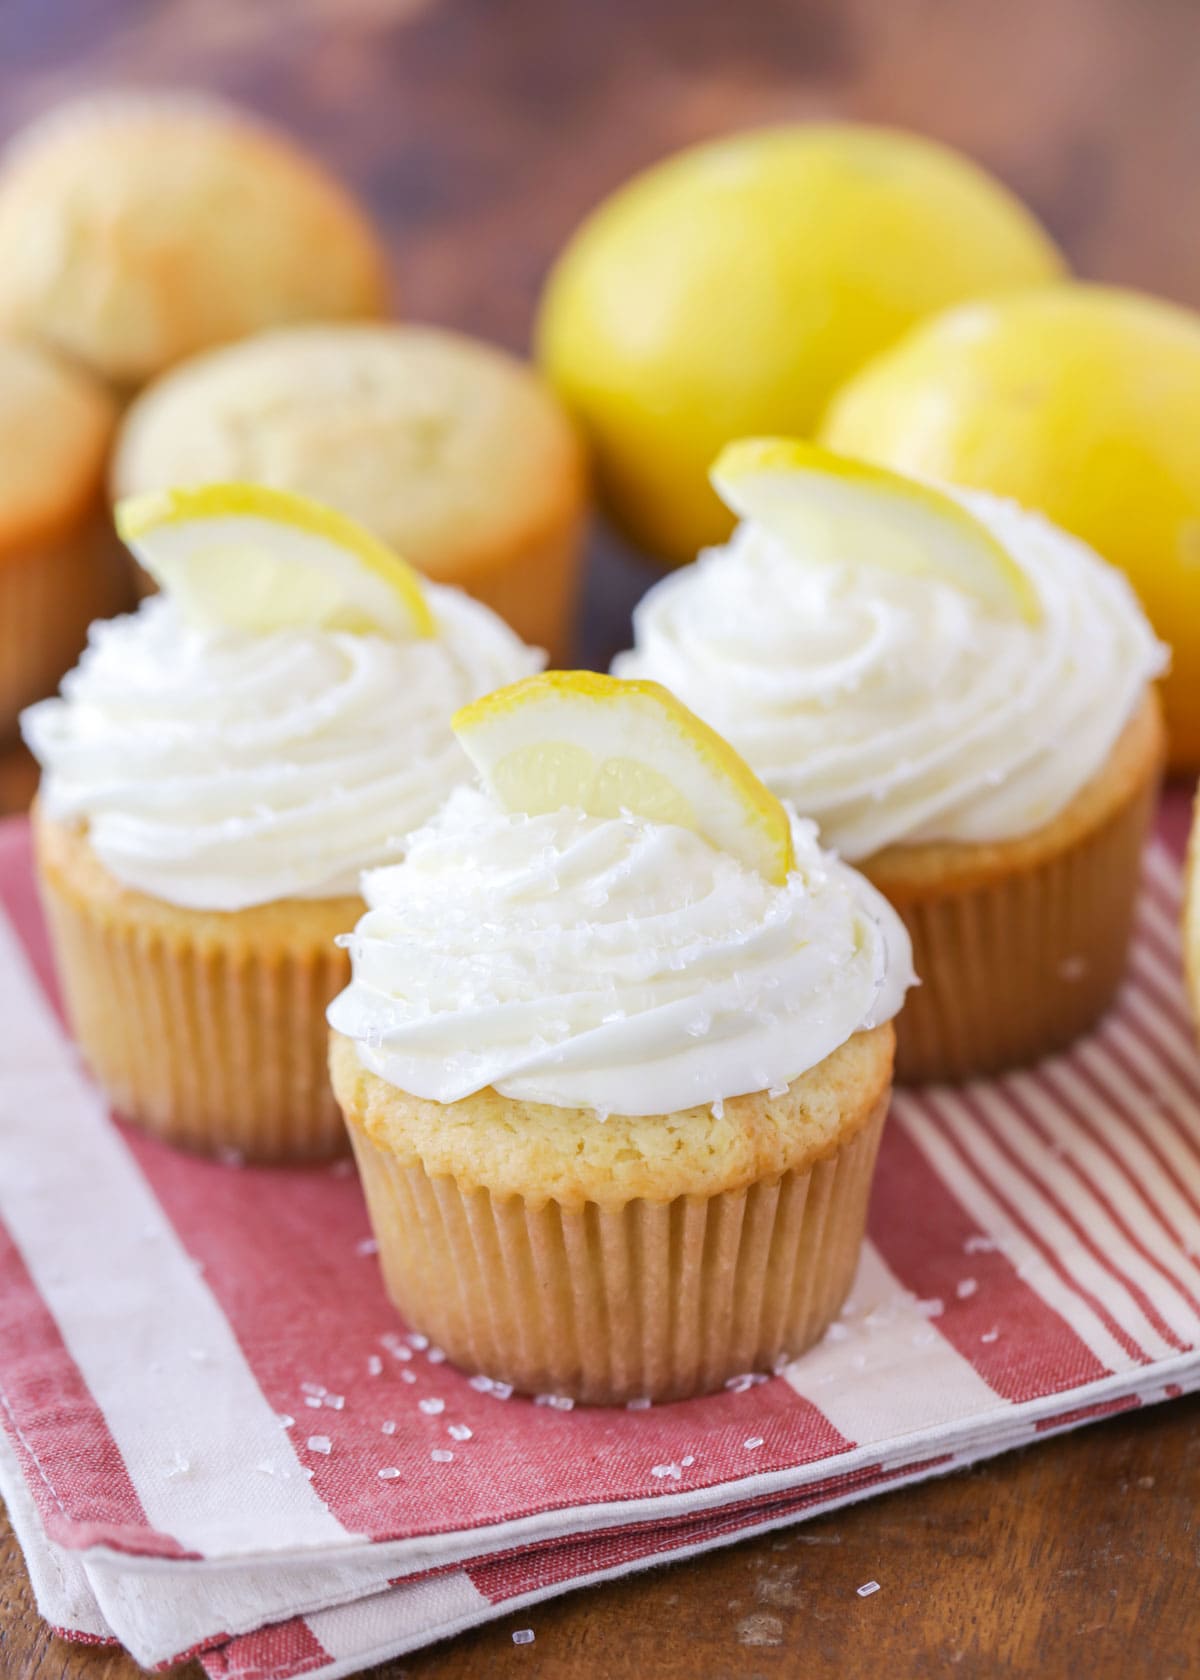 柠檬纸杯蛋糕上面有新鲜切片的柠檬。